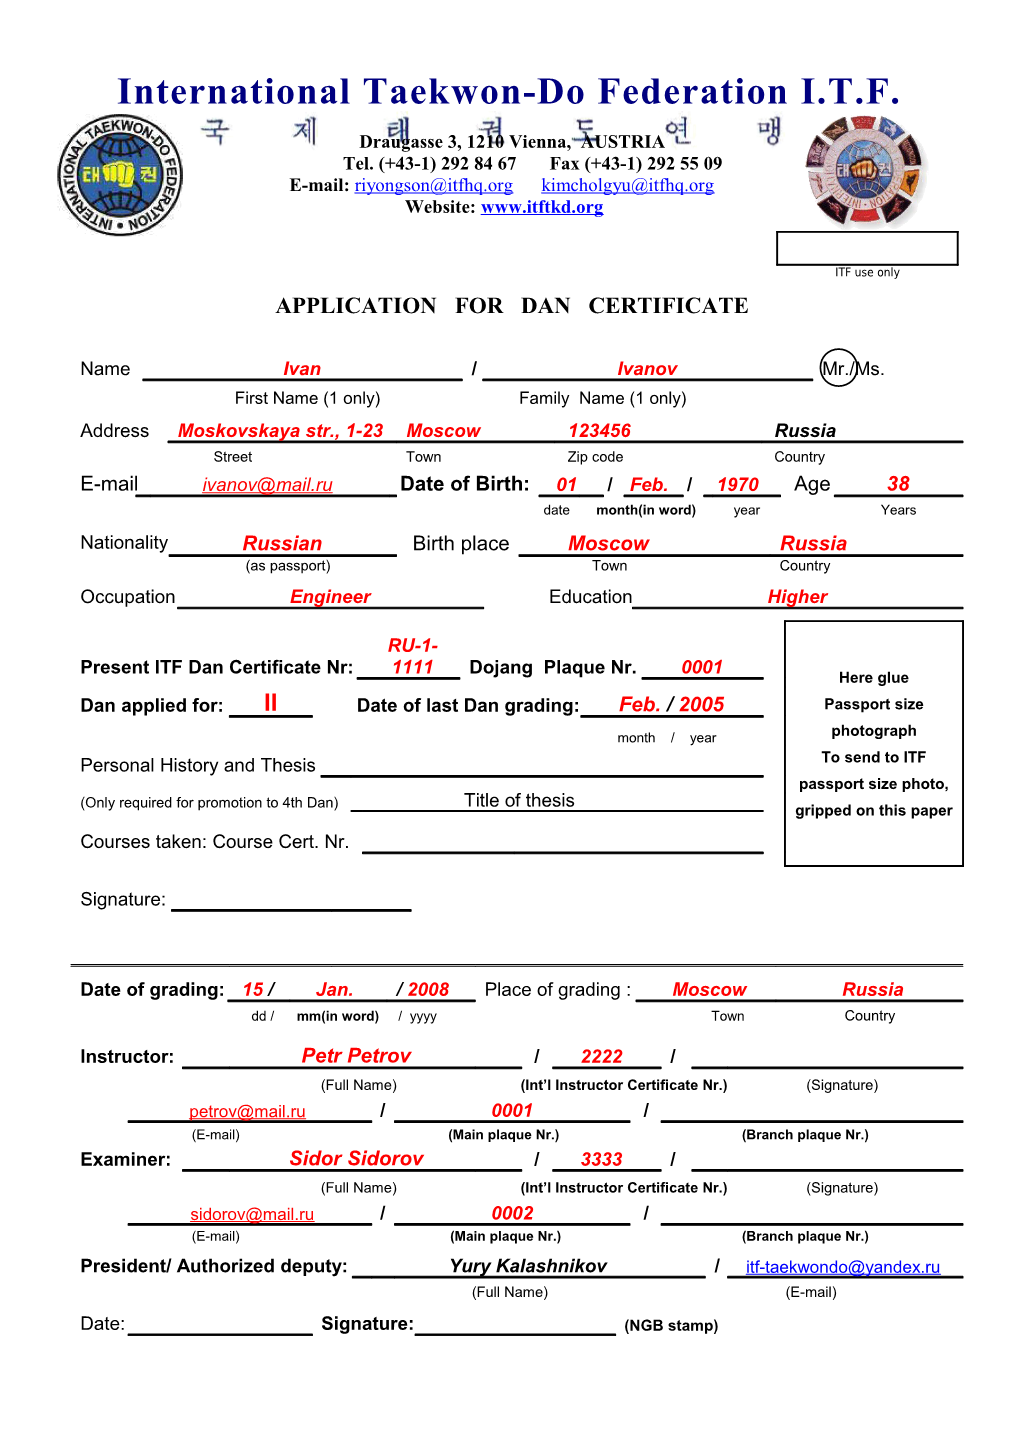 Application for Dan Certificate